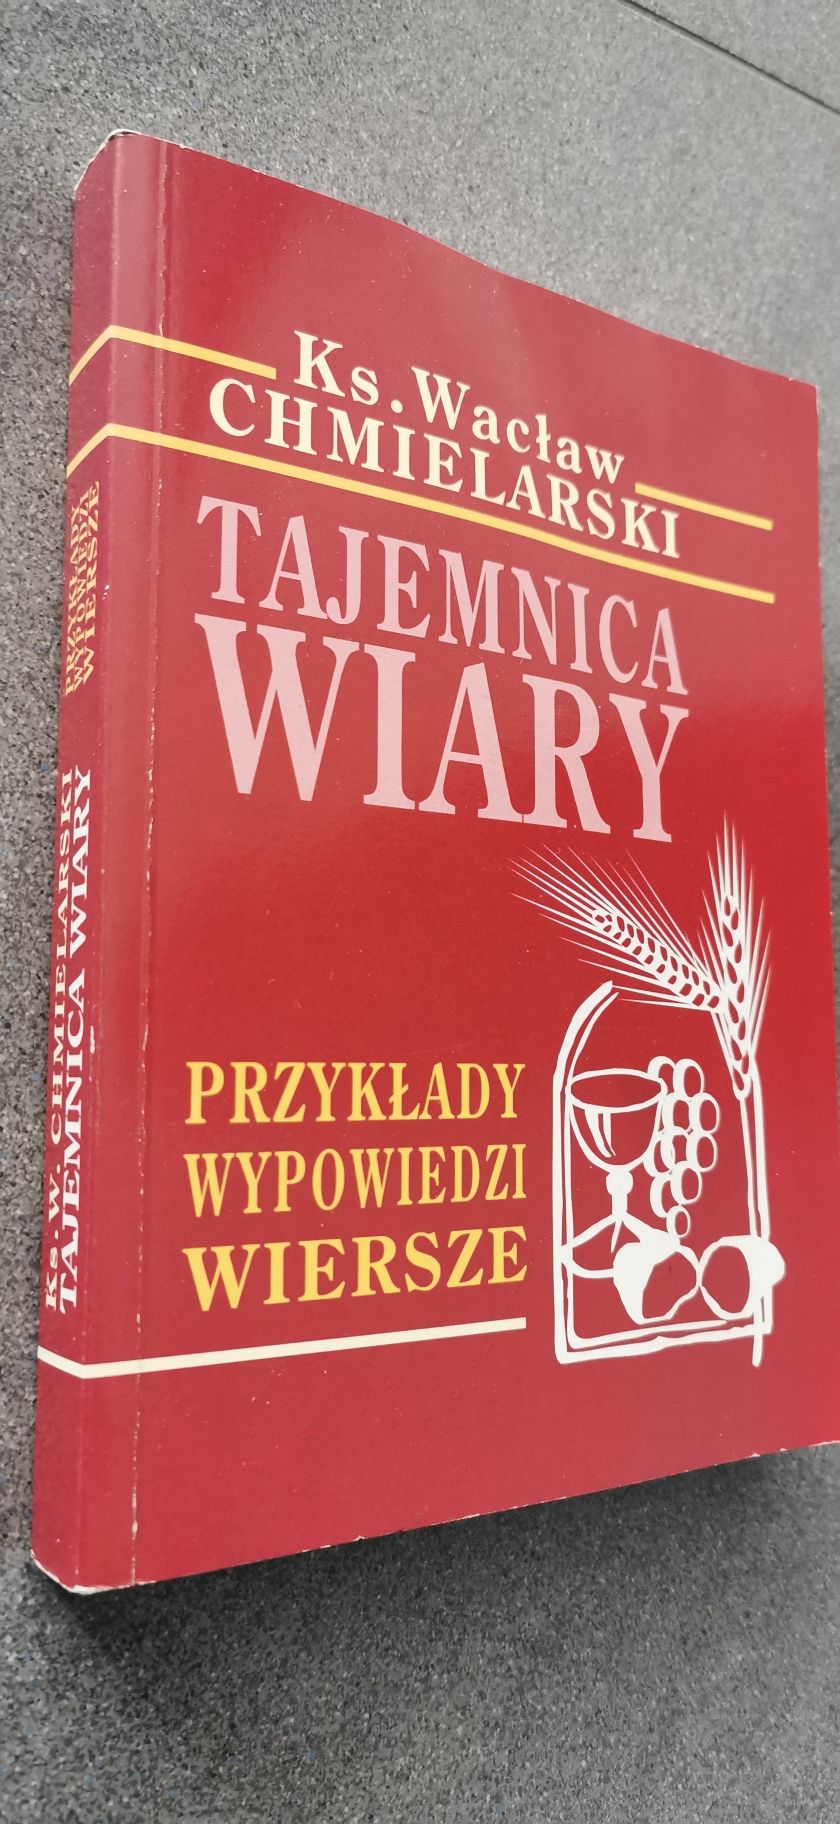 Tajemnica wiary
 Wacław Chmielarski